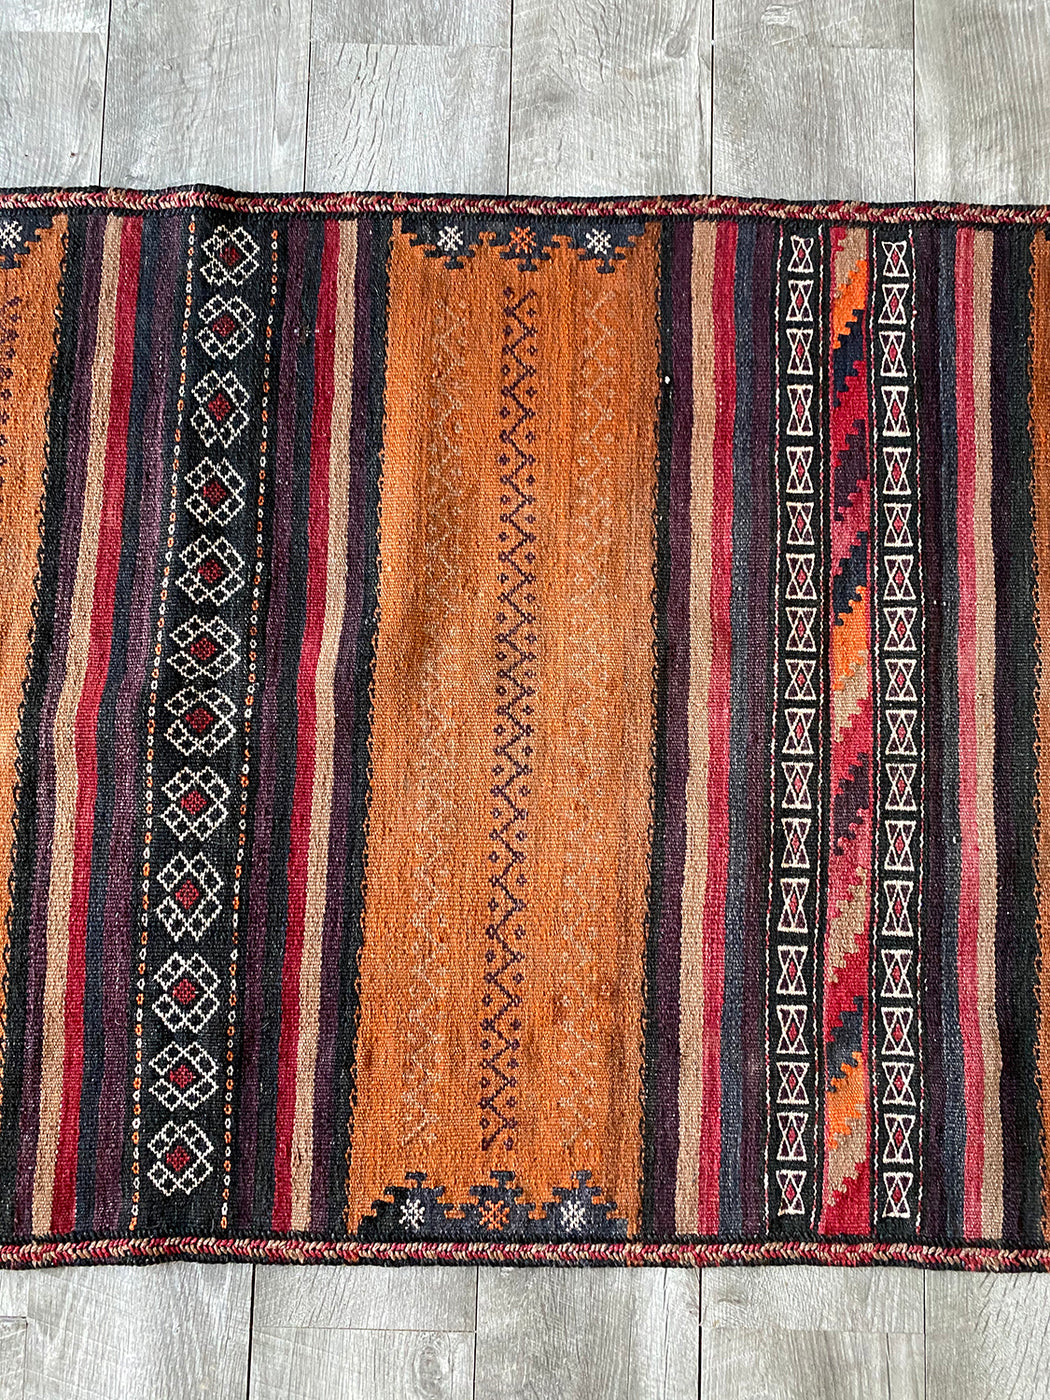 2' 5" x 7' Vintage Turkish Kilim Runner | Brown and Black Stripe Rug